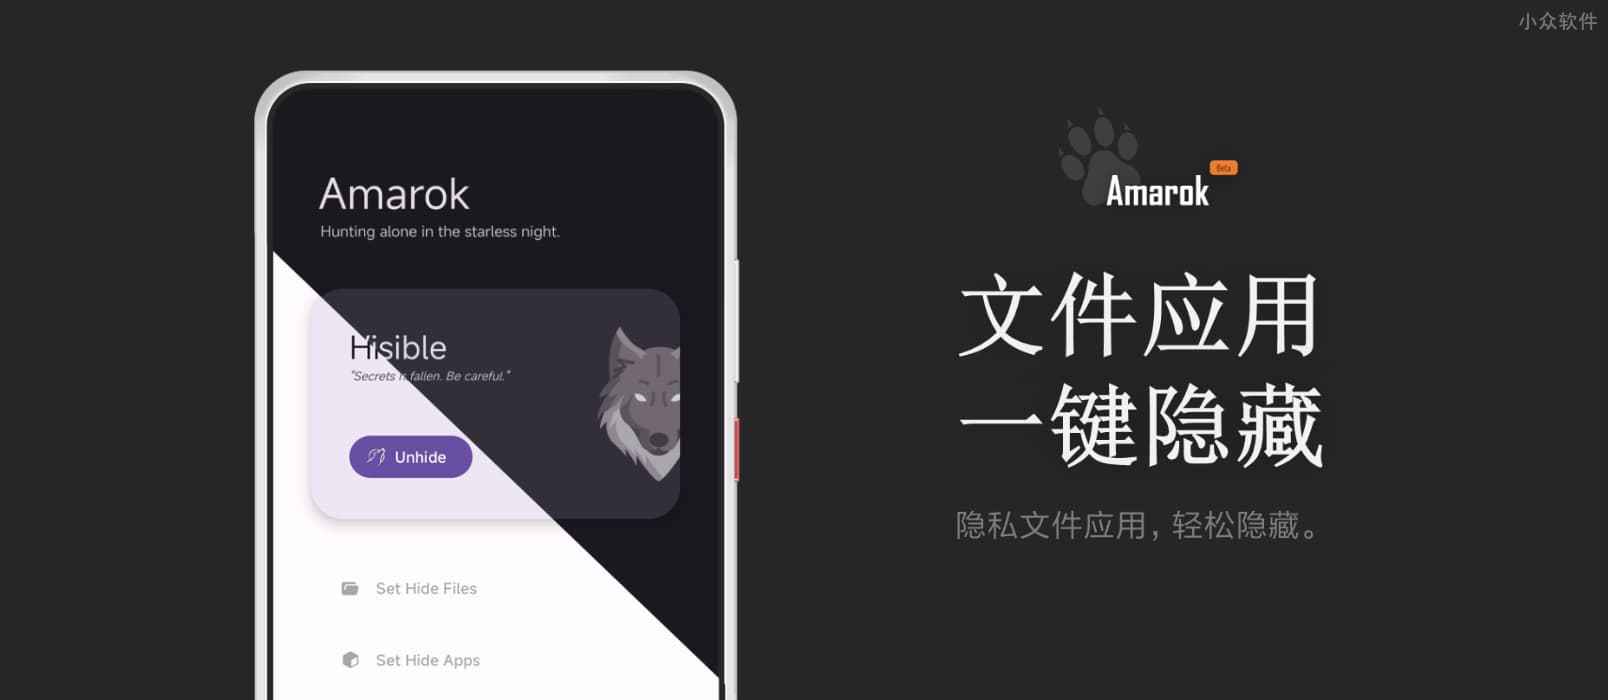 Amarok – 一键隐藏安卓手机隐私文件和应用[Android]